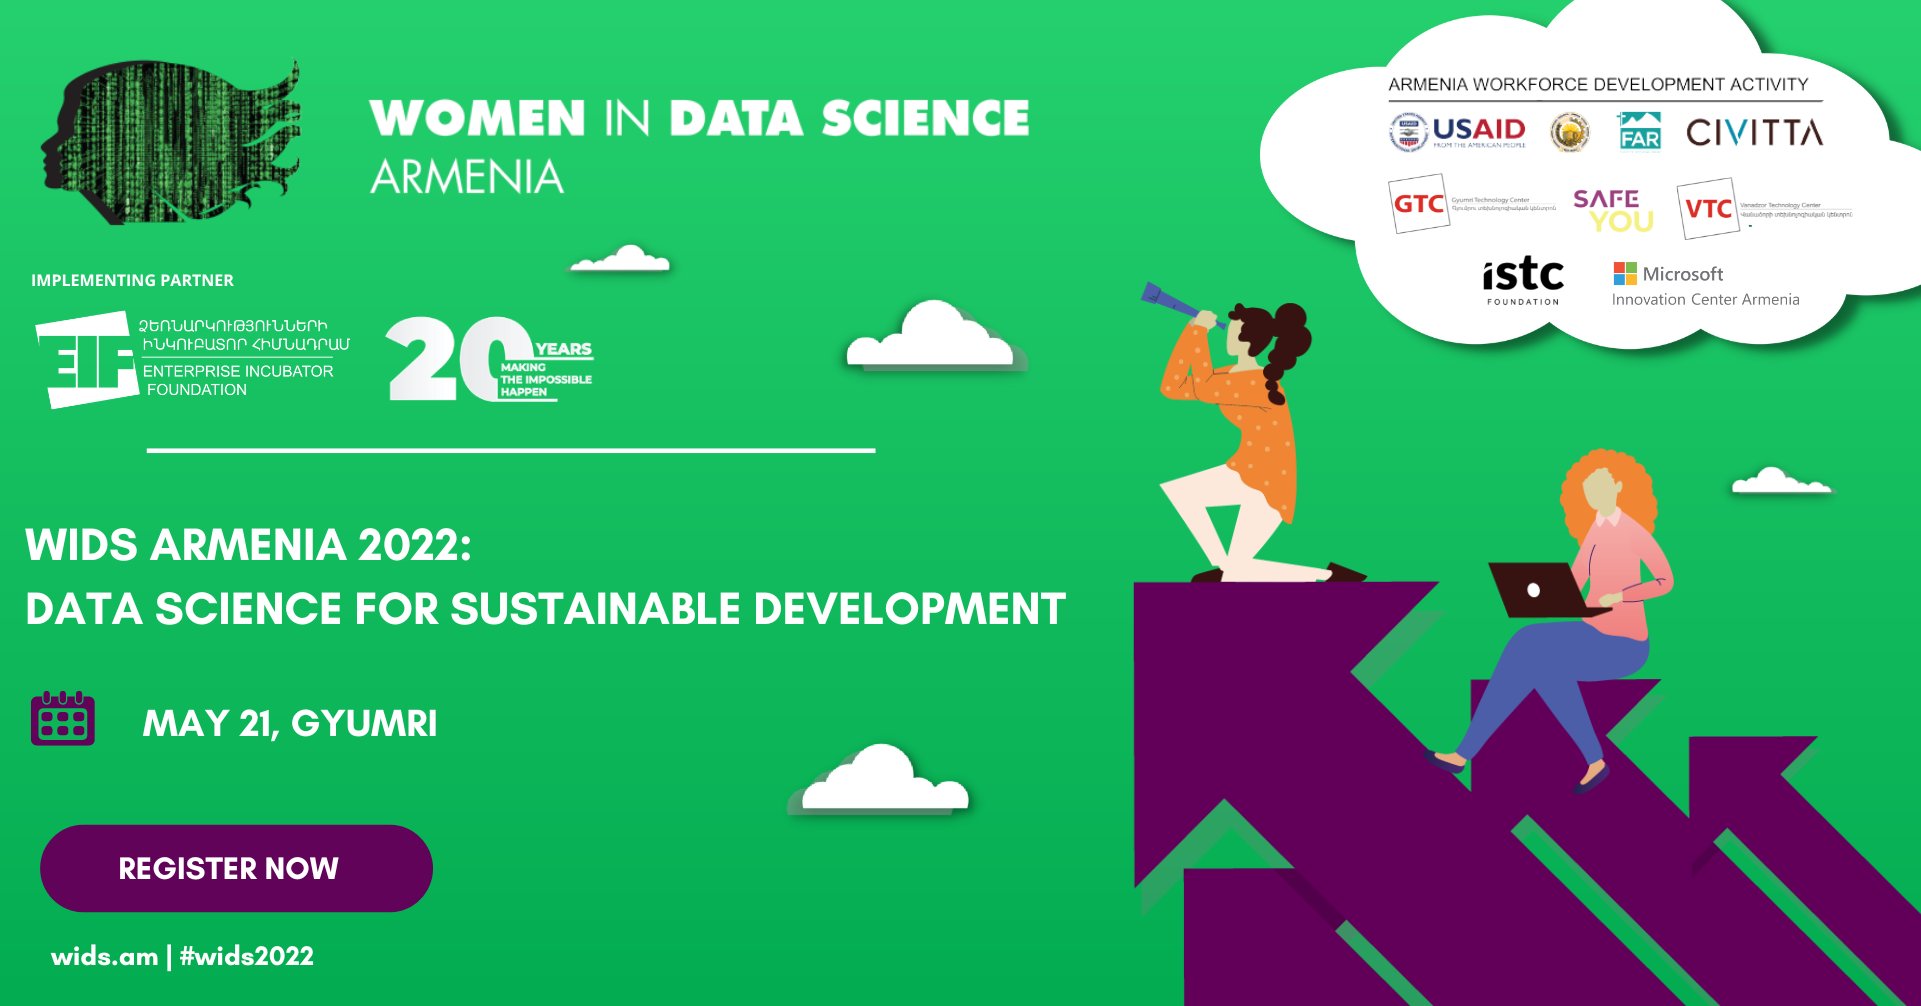 Women in Data Science ARMENIA 2022